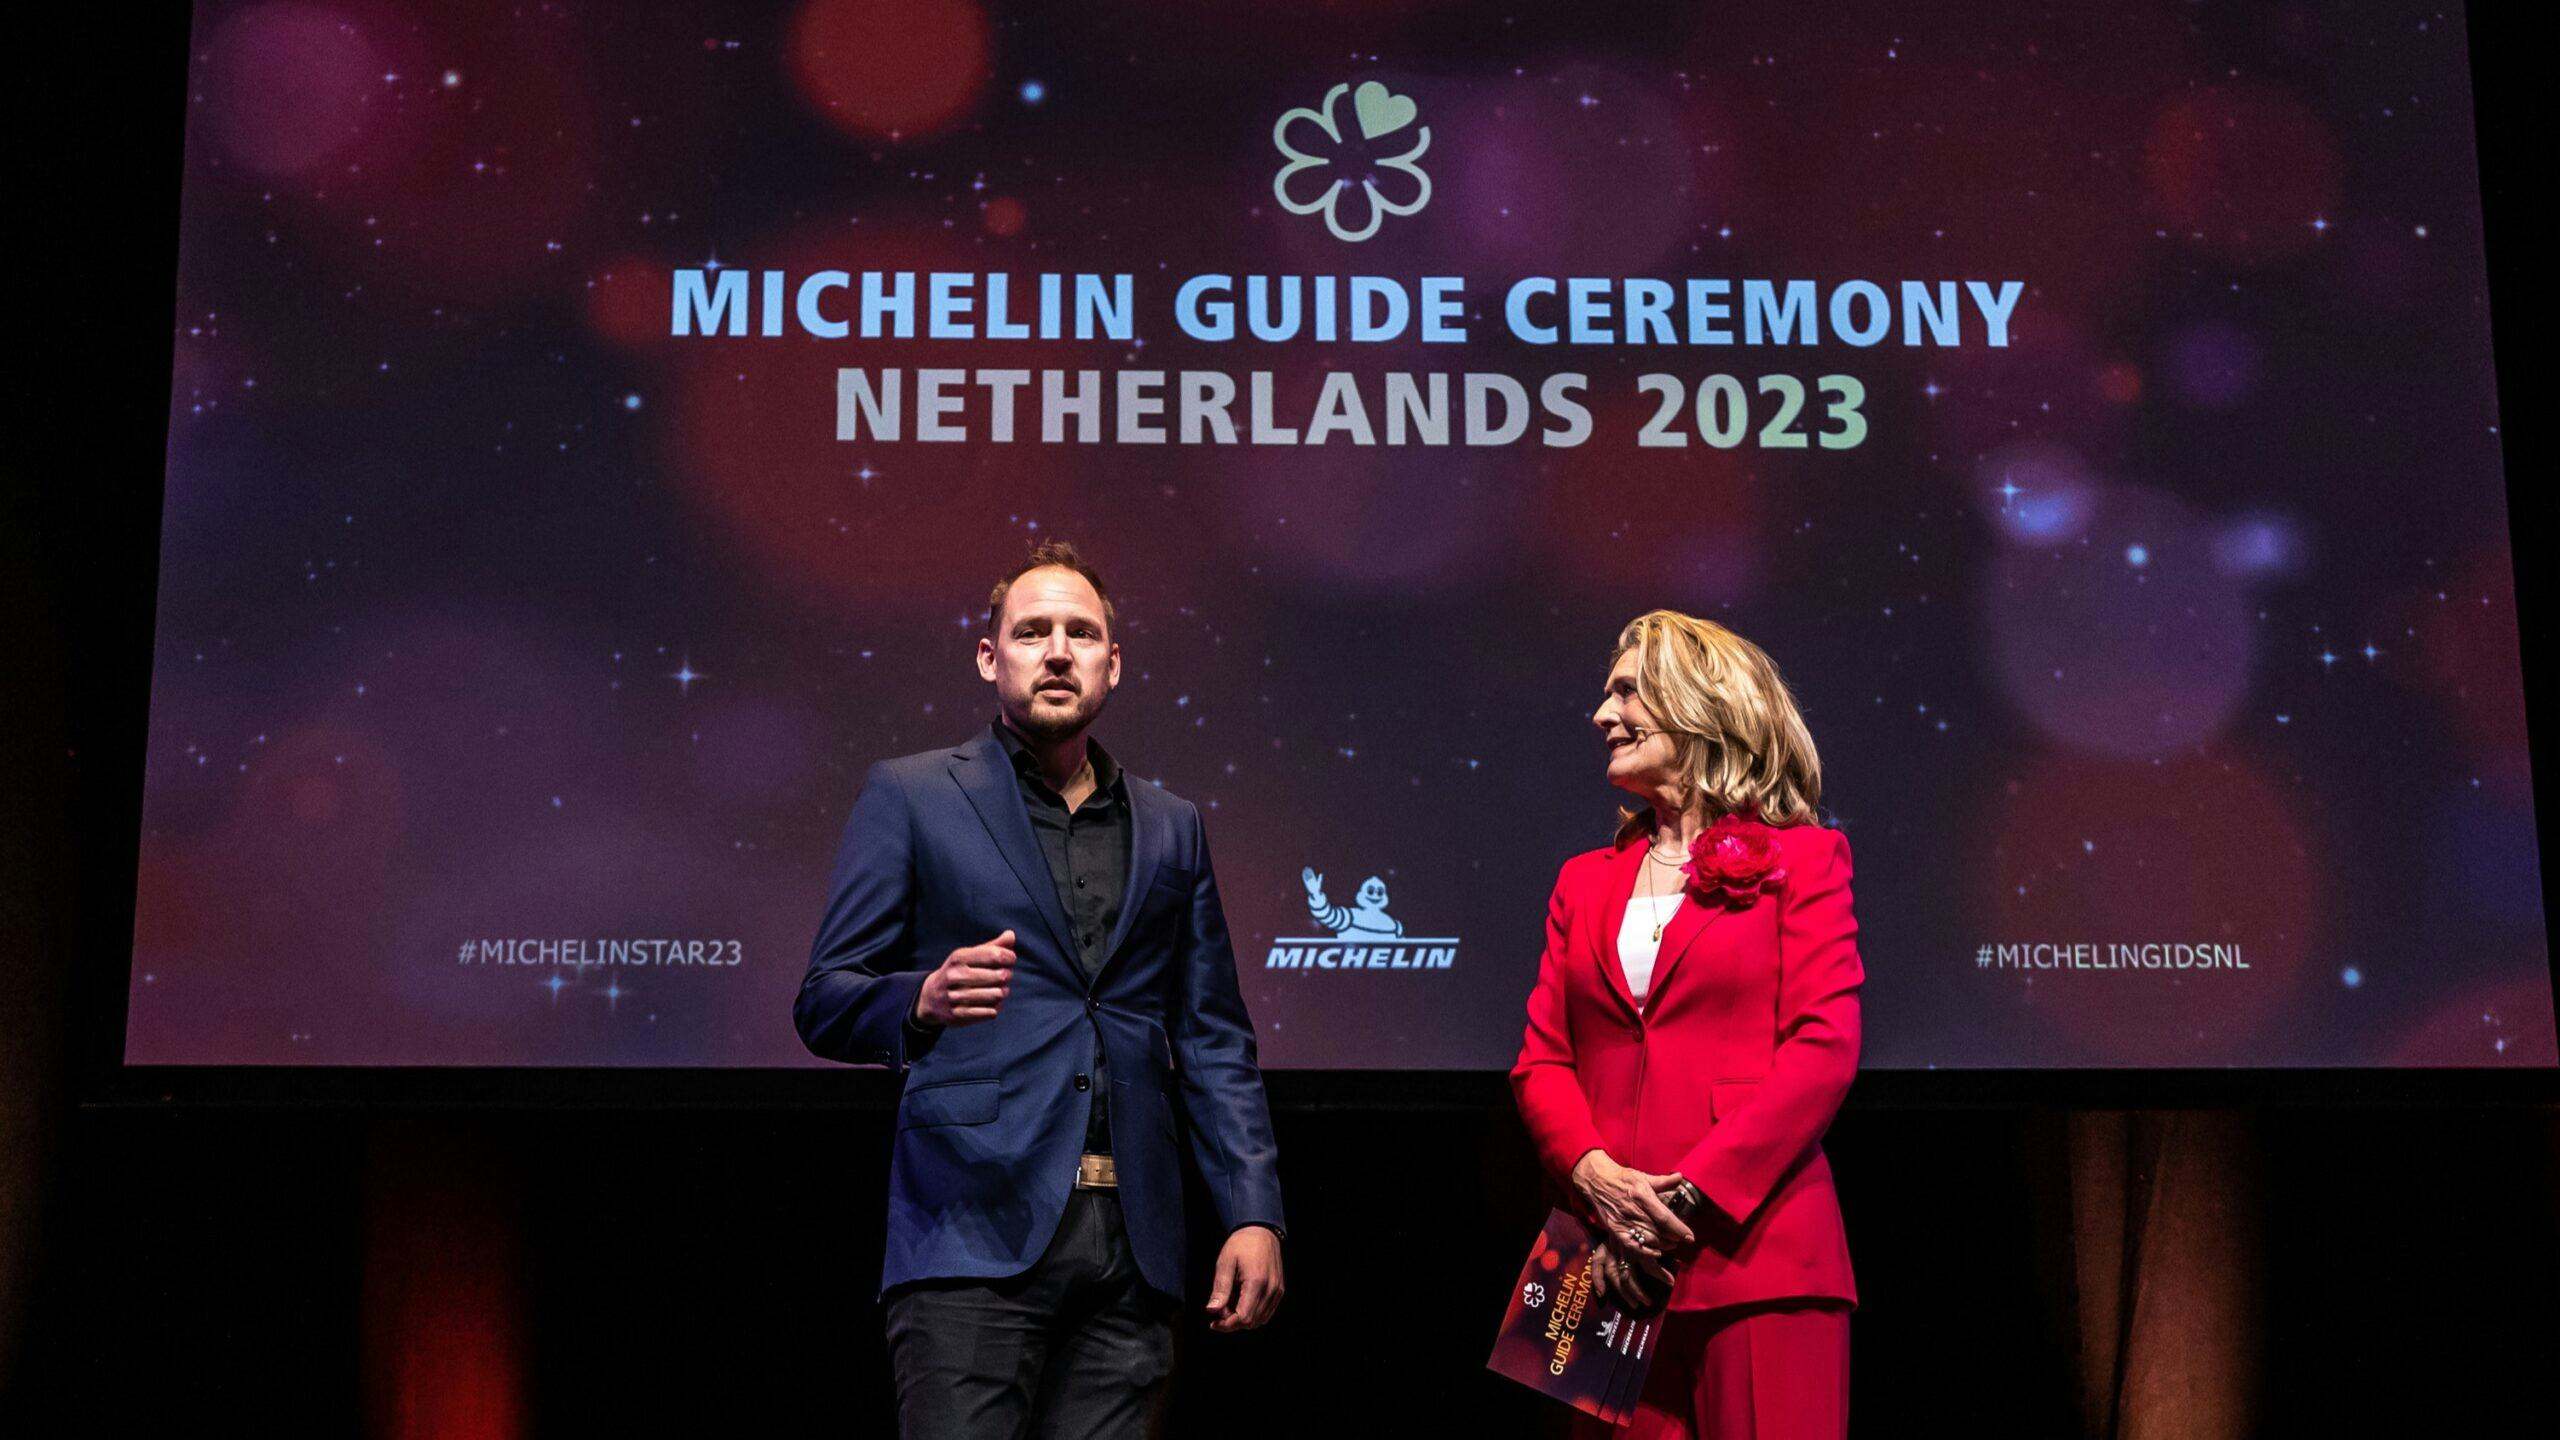 De uitreiiking van Michelin in 2023, de ceremonie verhuist van Amsterdam naar Maastricht (foto: Diederik van der Laan)